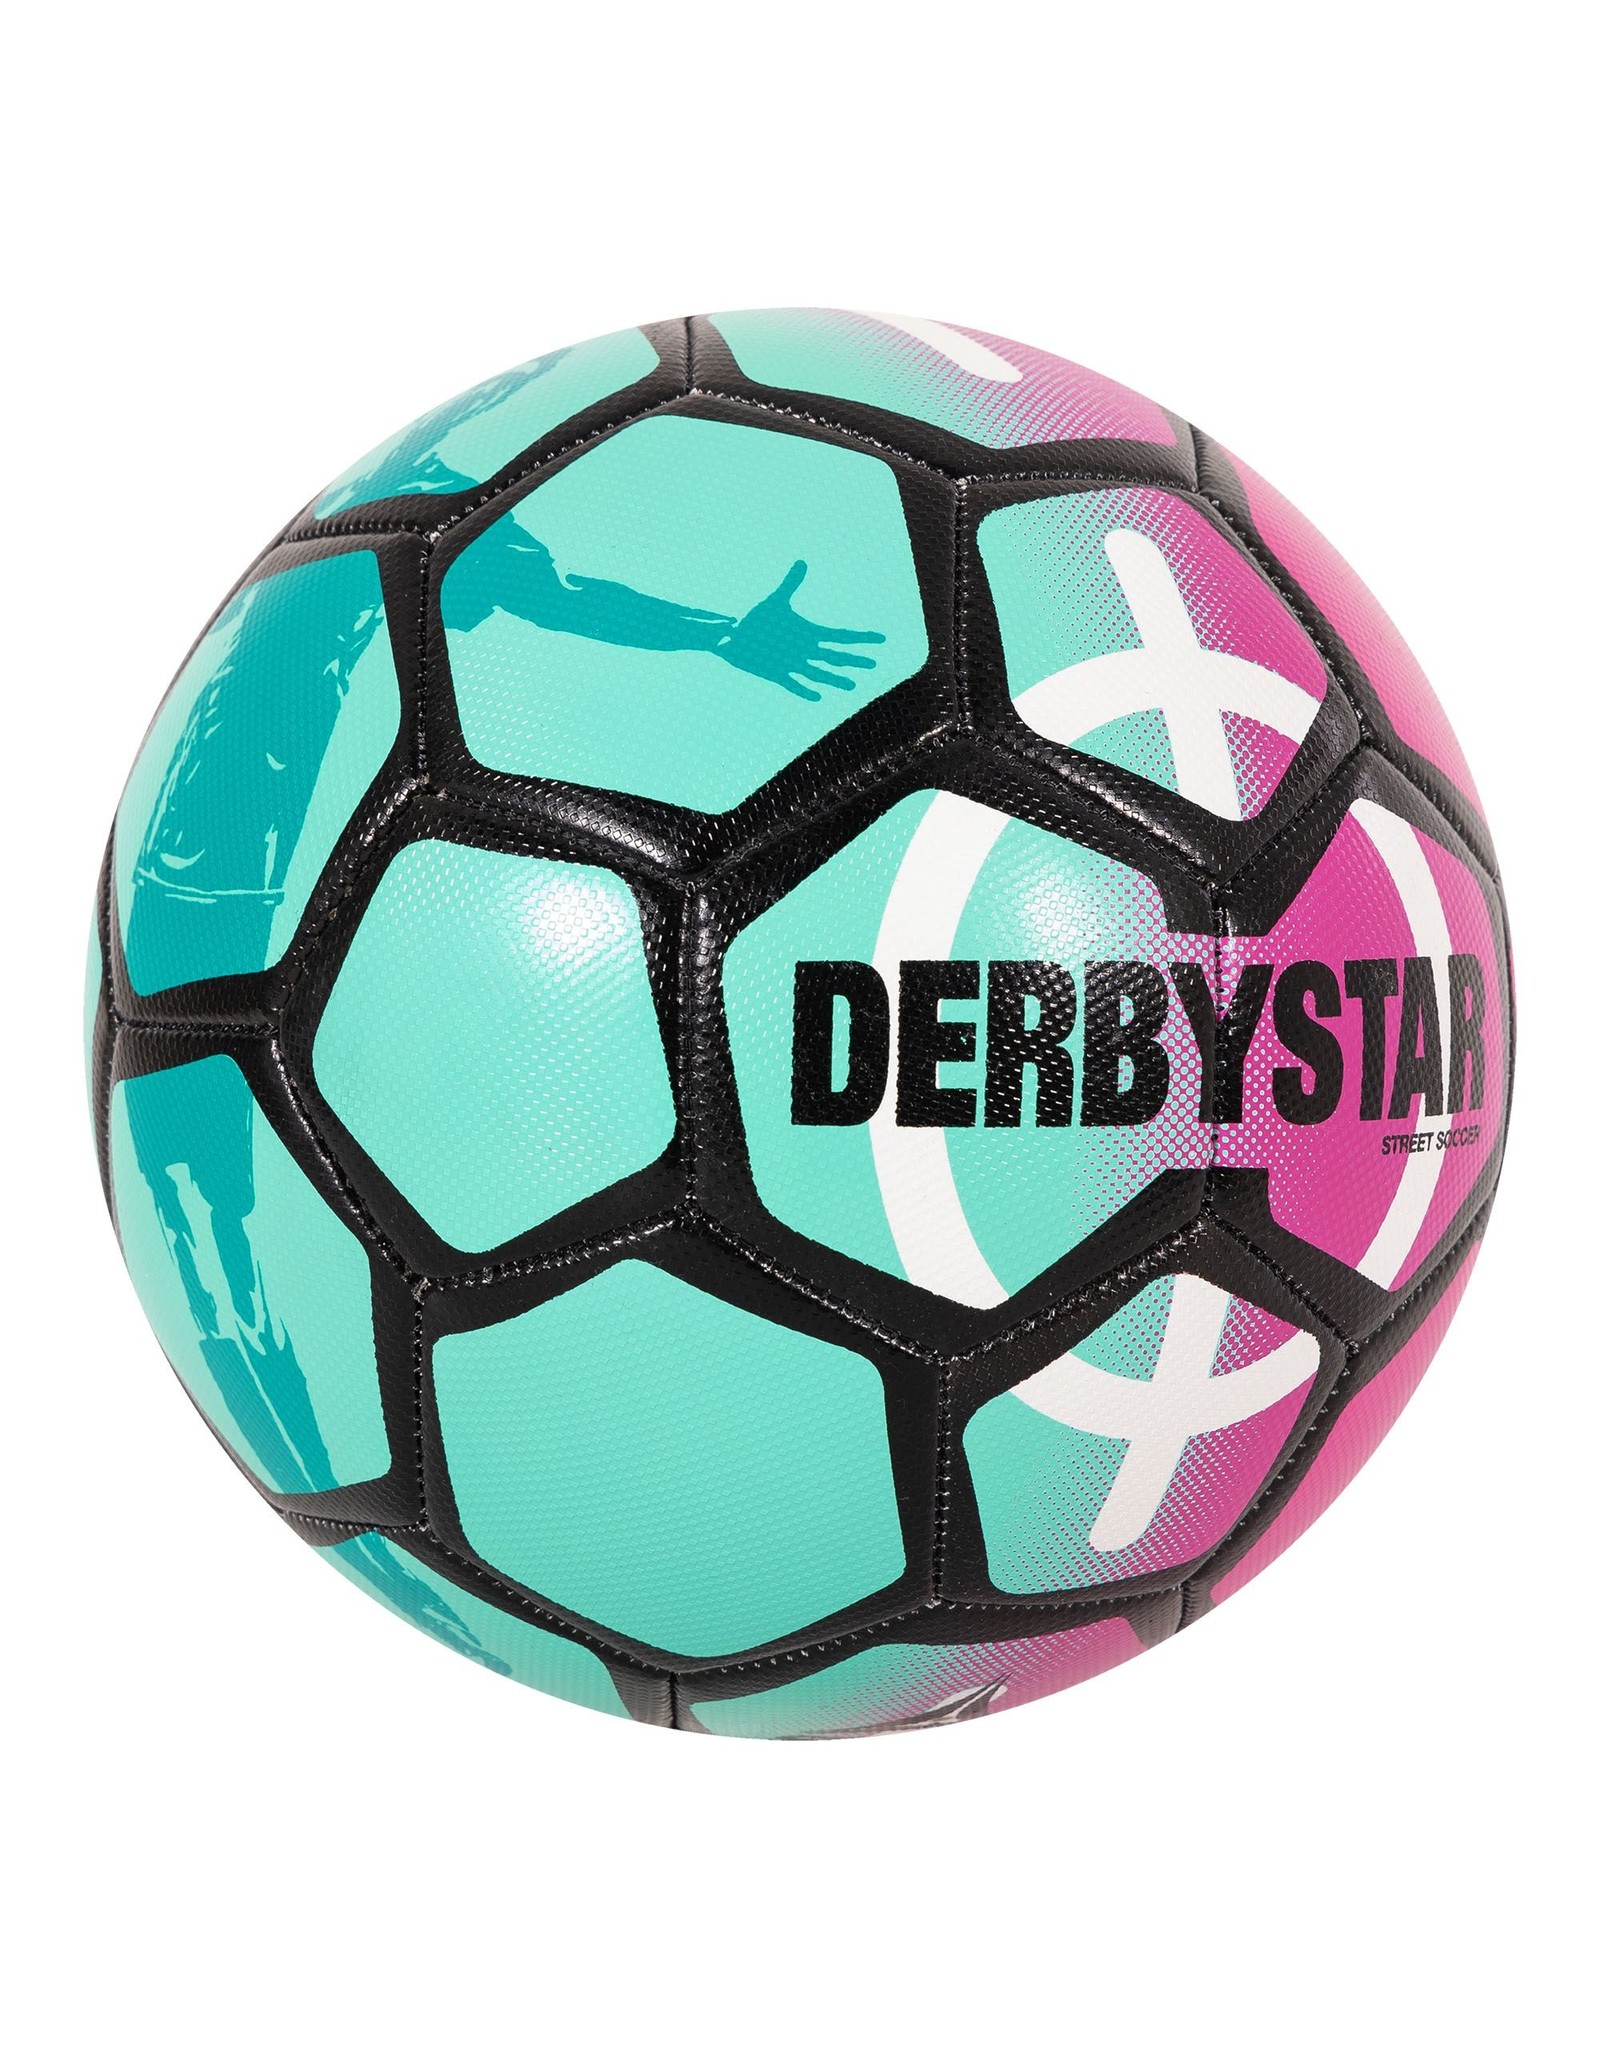 Derbystar Derbystar Street Soccer Ball-Mint-Pink-Black